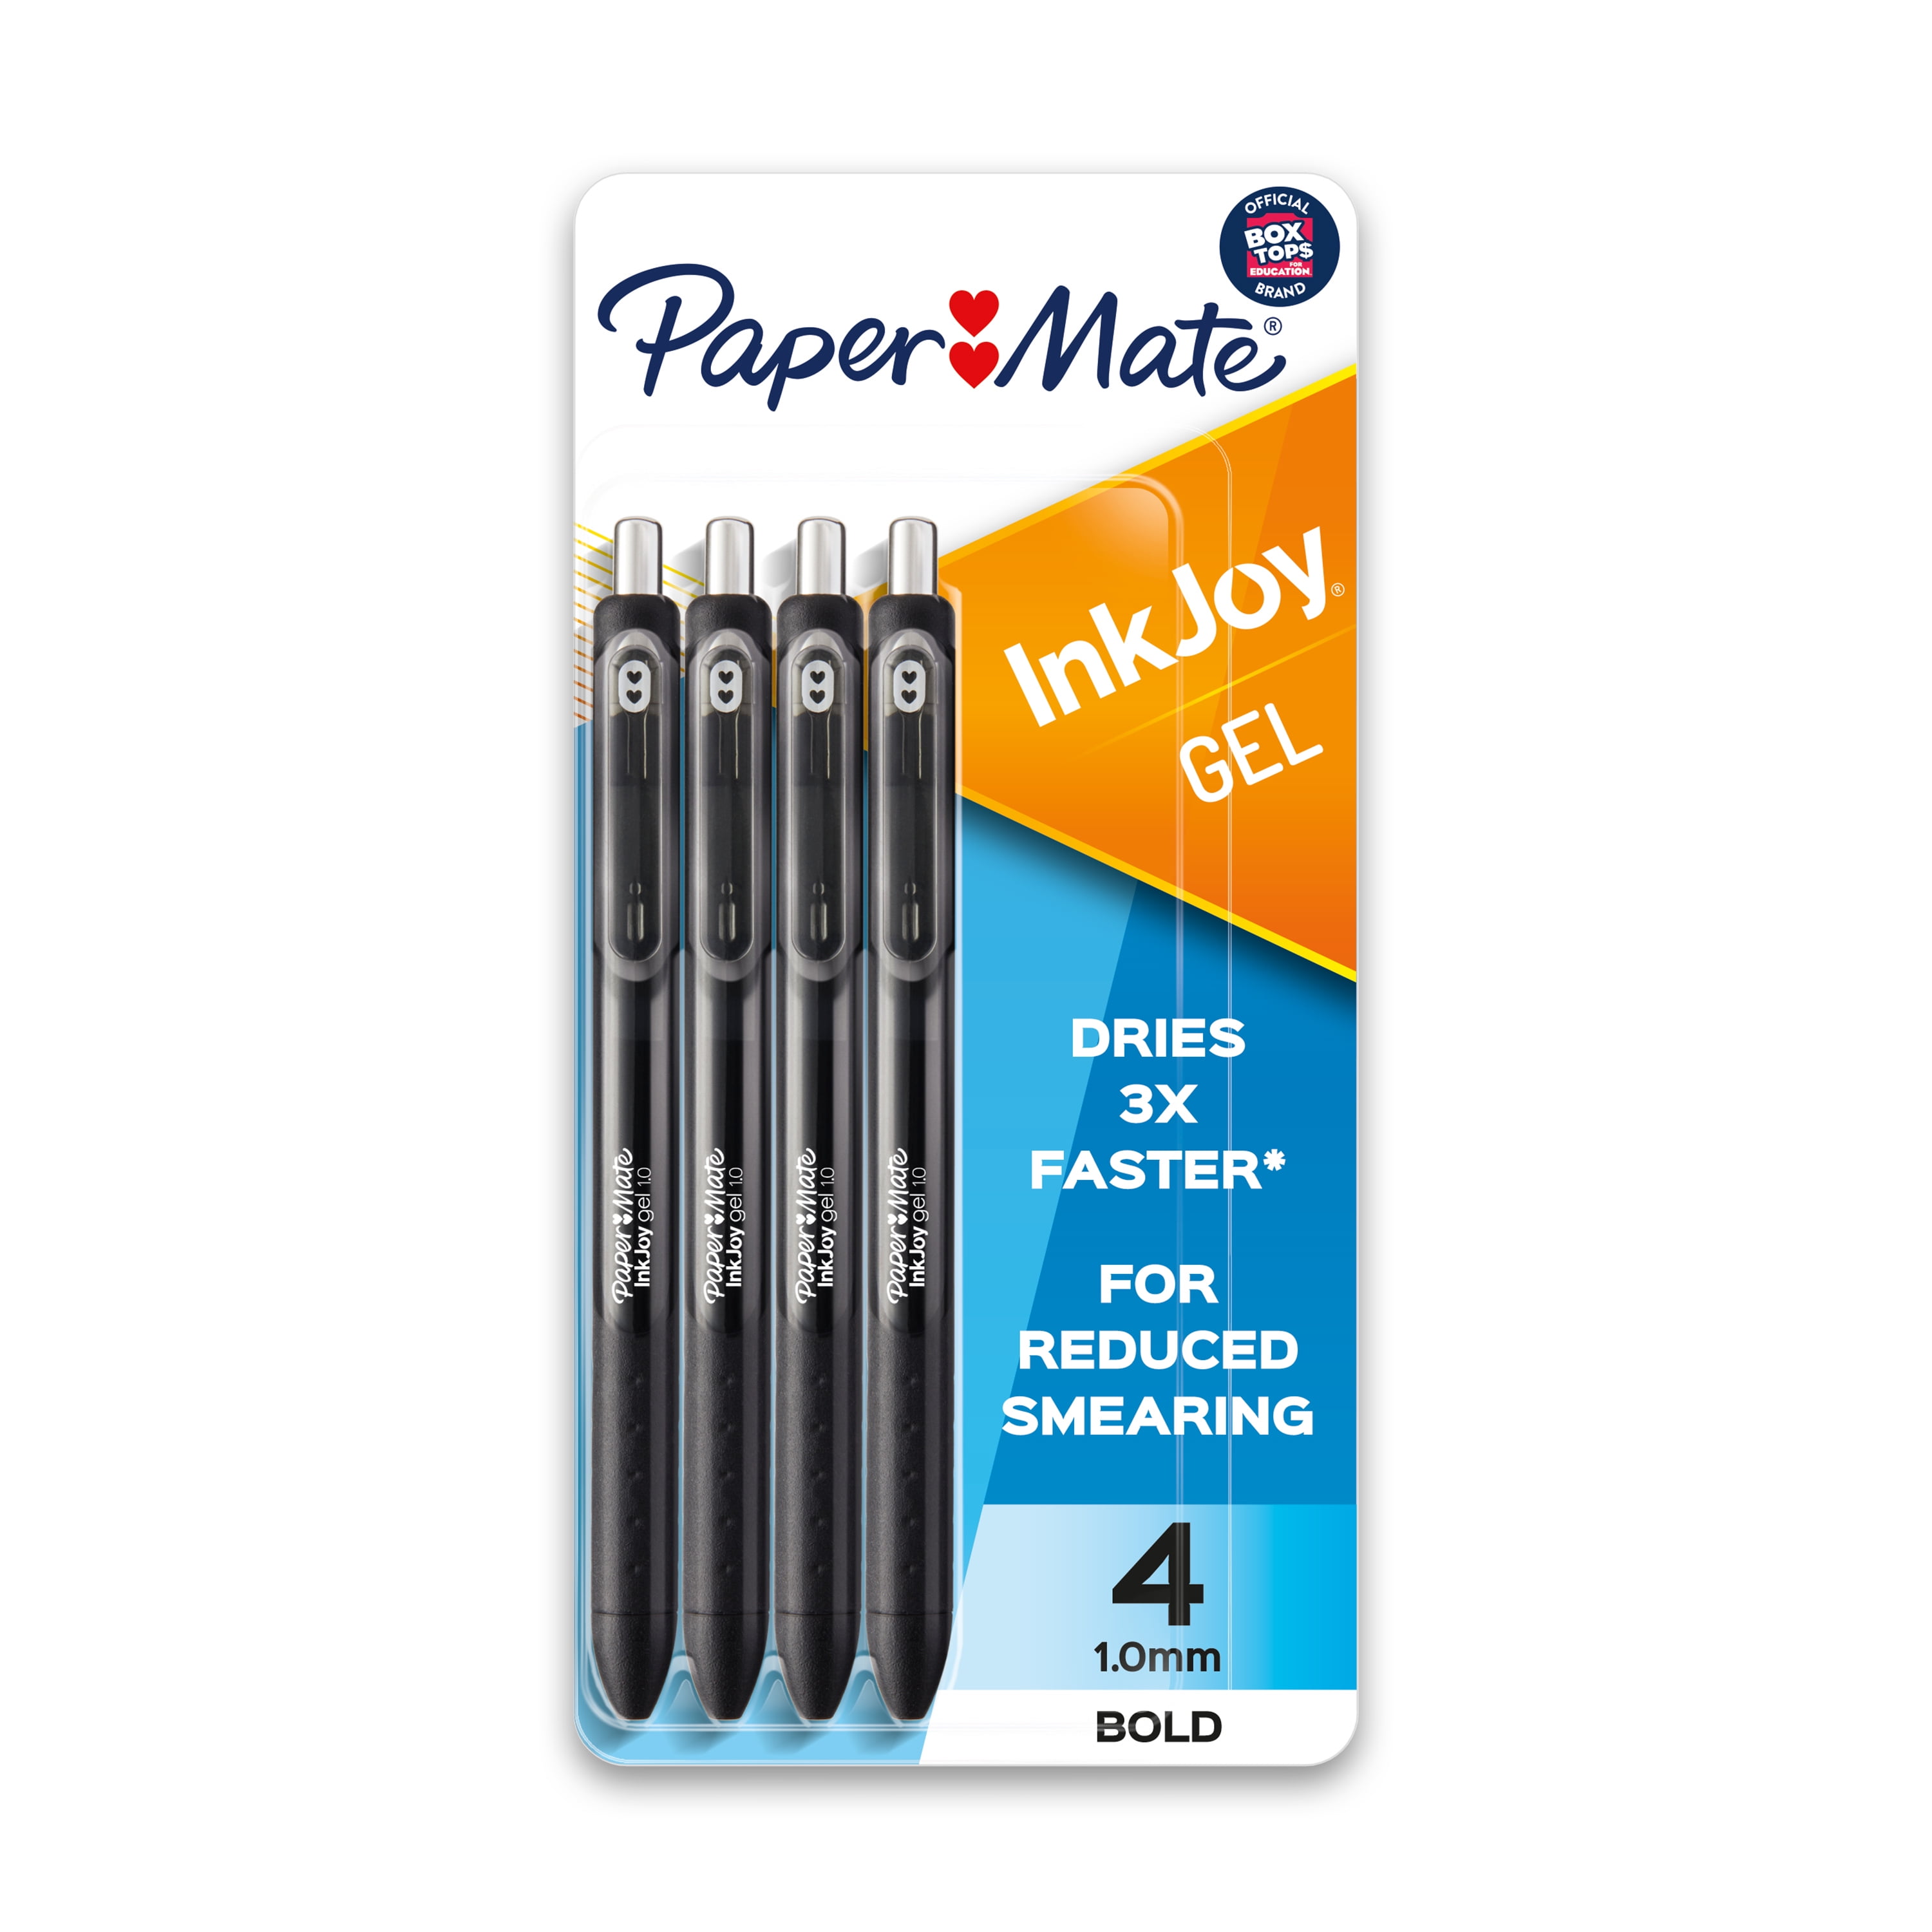 20 x Blue Ballpoint Pens Paper Mate Ink Joy Mini Vibrant Long Lasting 